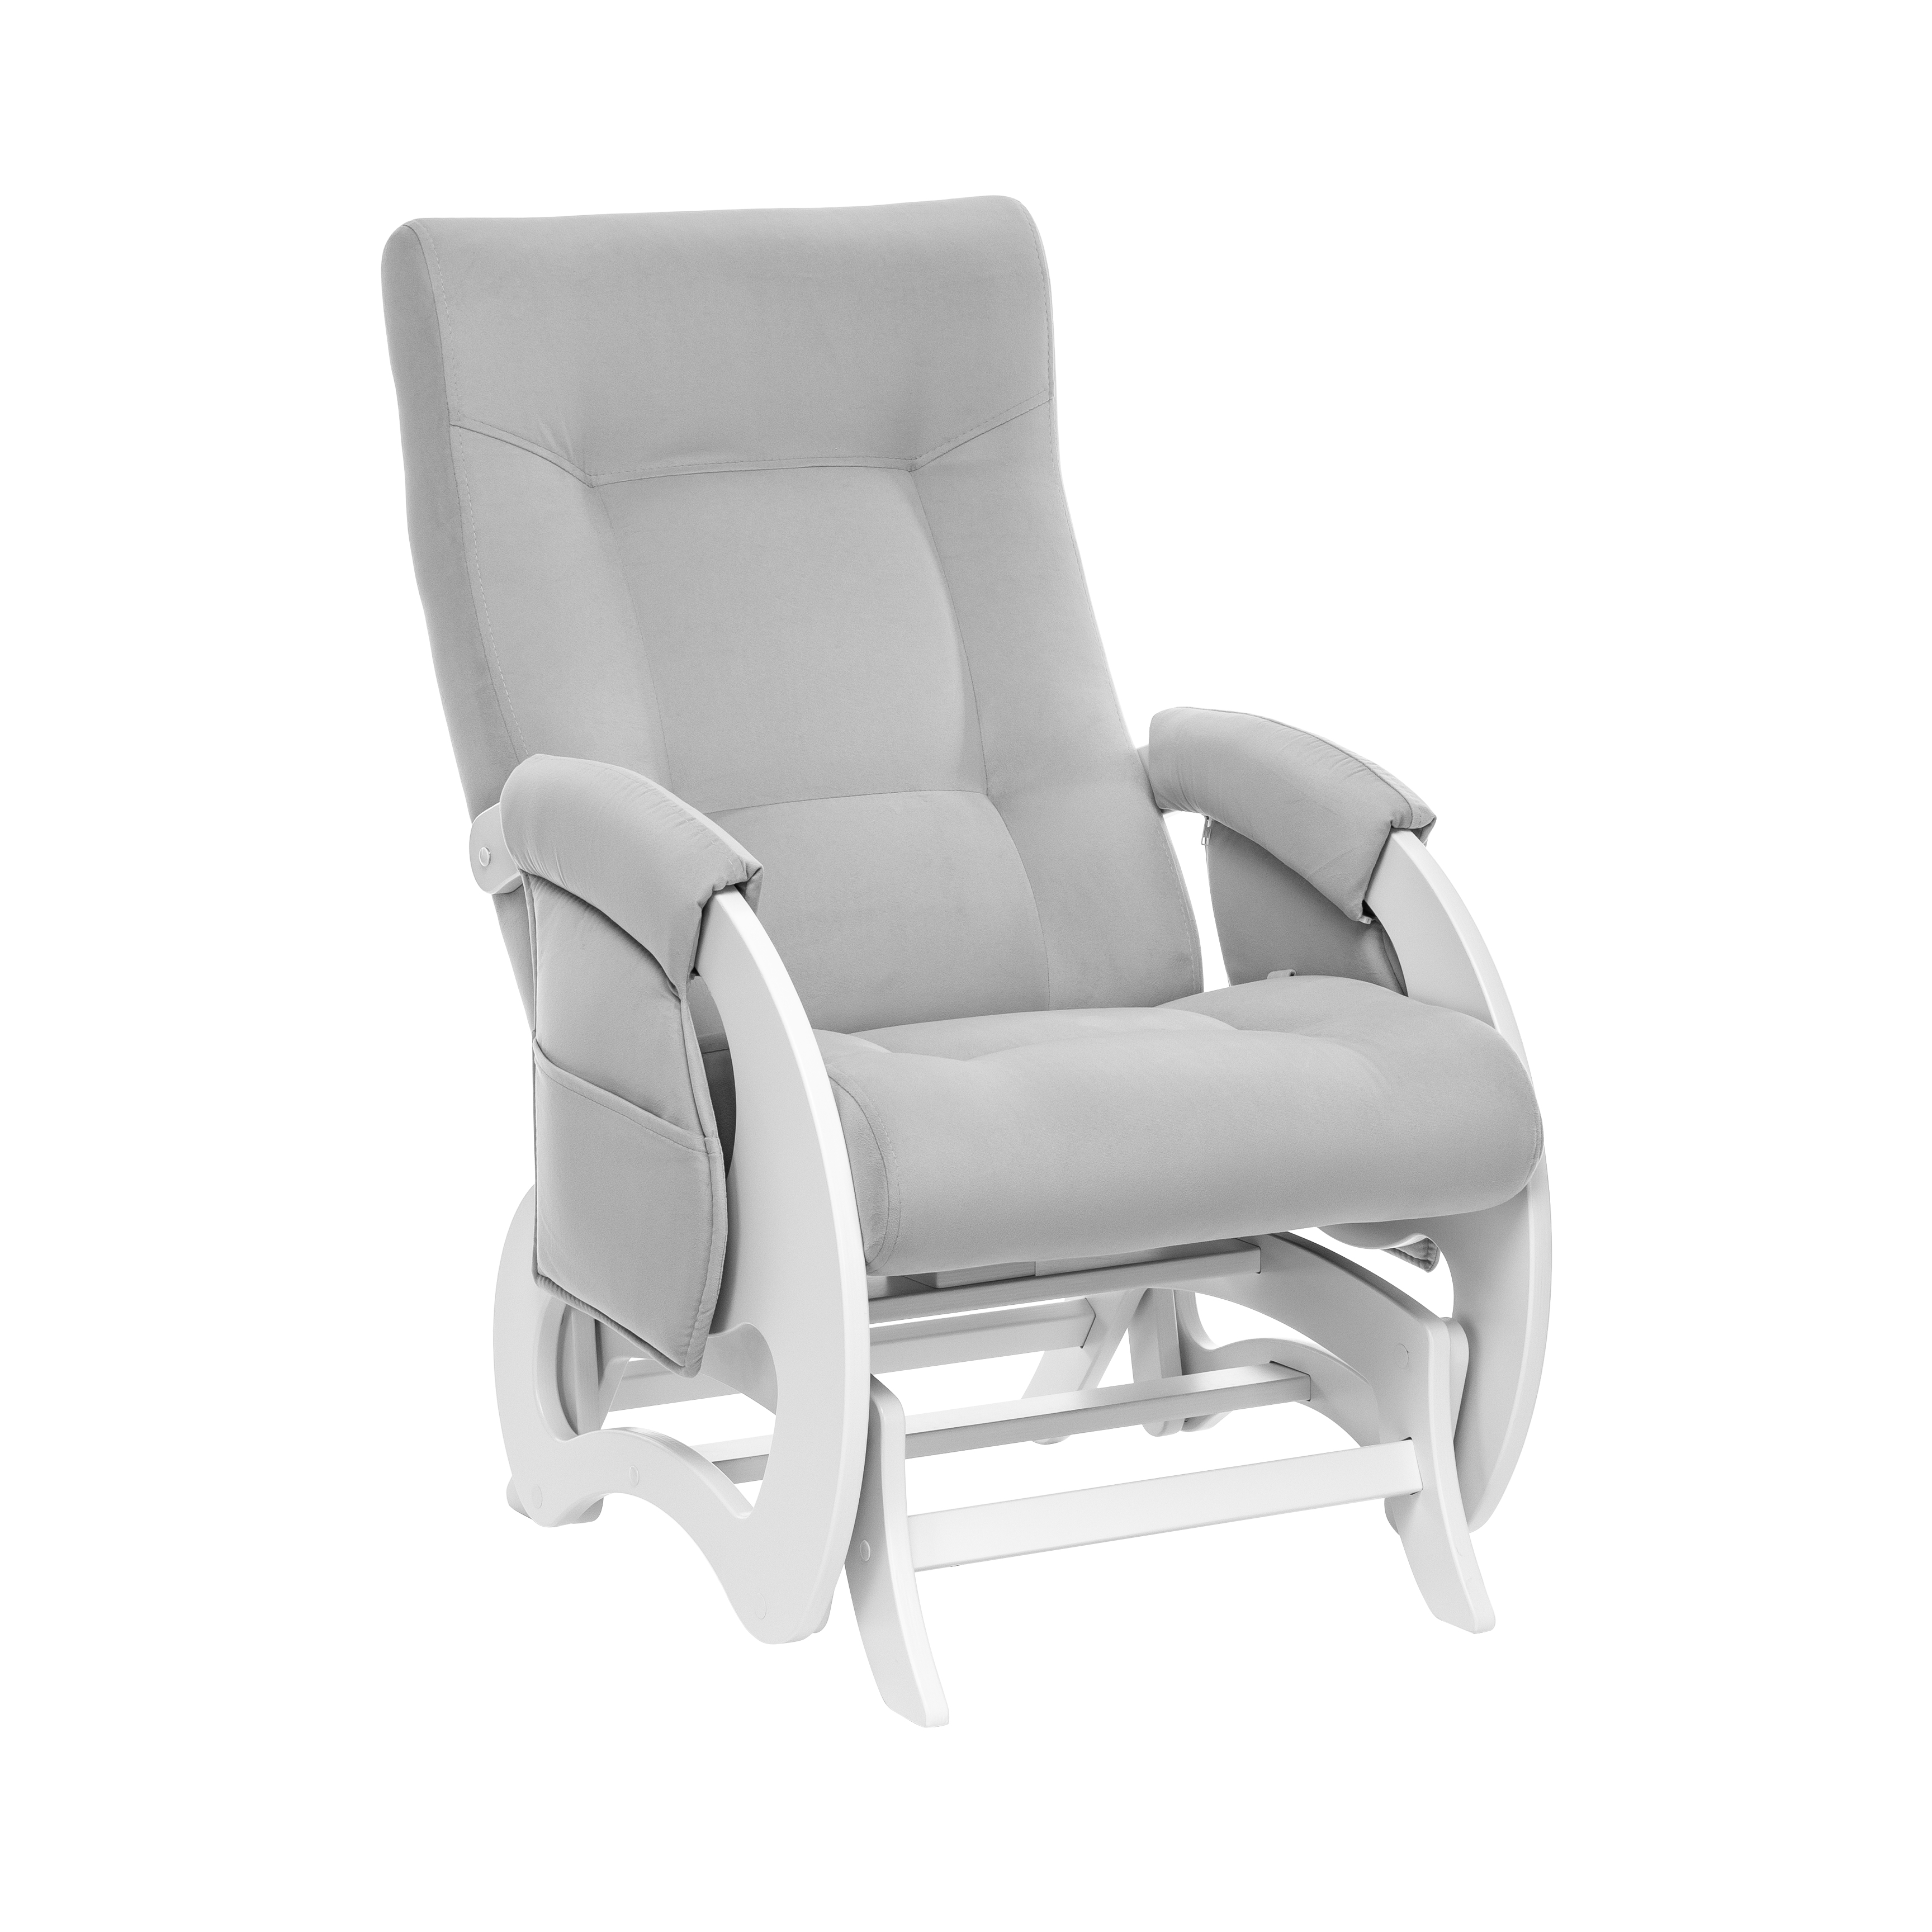 Кресло-глайдер для кормления Milli Ария Дуб молочный V51 Light Grey кресло для мамы milli пуф uni молочный дуб